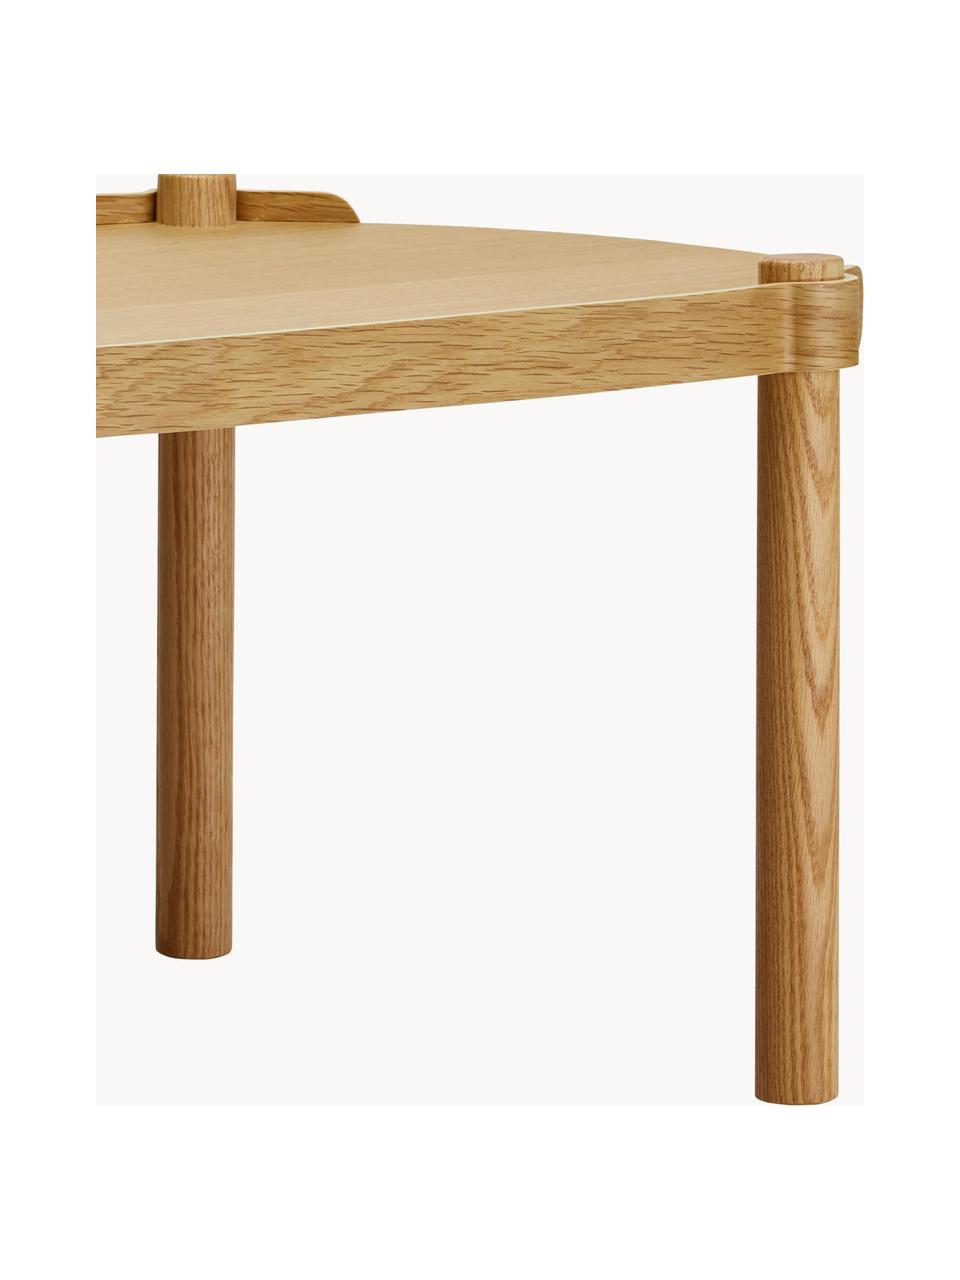 Owalny stolik kawowy z drewna dębowego Woody, Drewno dębowe z certyfikatem FSC, Drewno dębowe, S 105 x W 50 cm